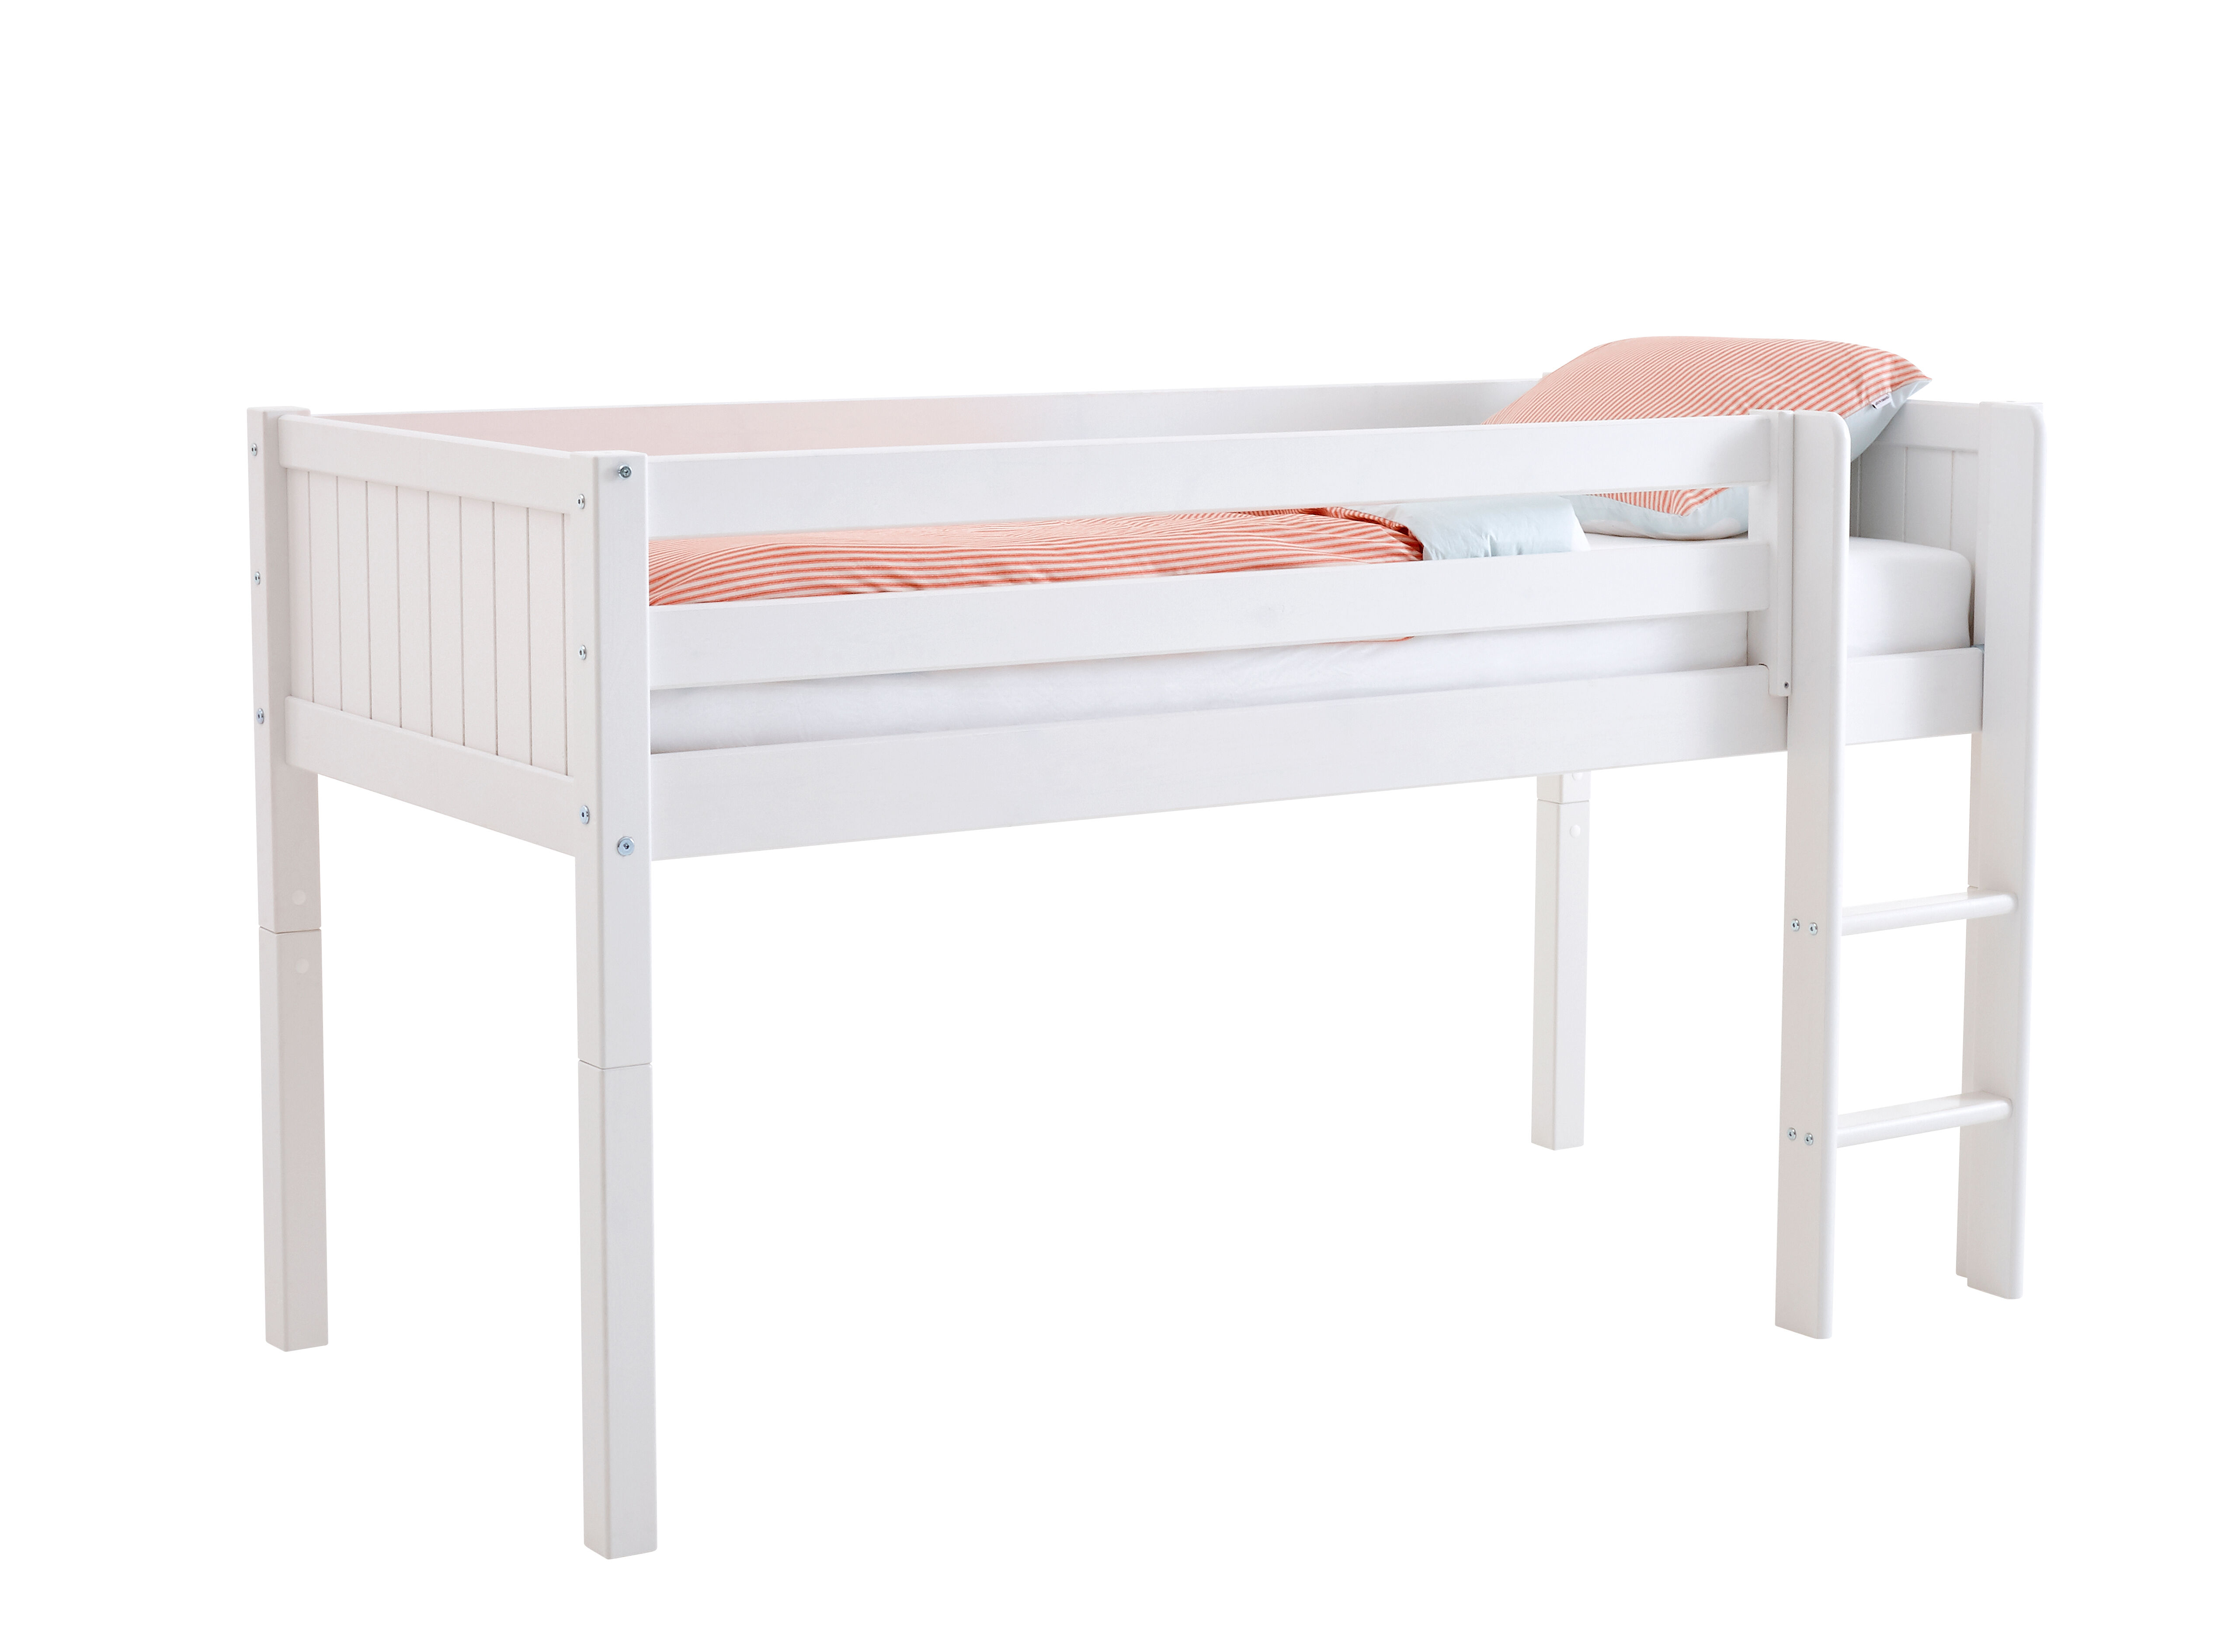 Flexa Basic Nordic barneseng halvhøy seng 90x200 cm, med spor, hvit.